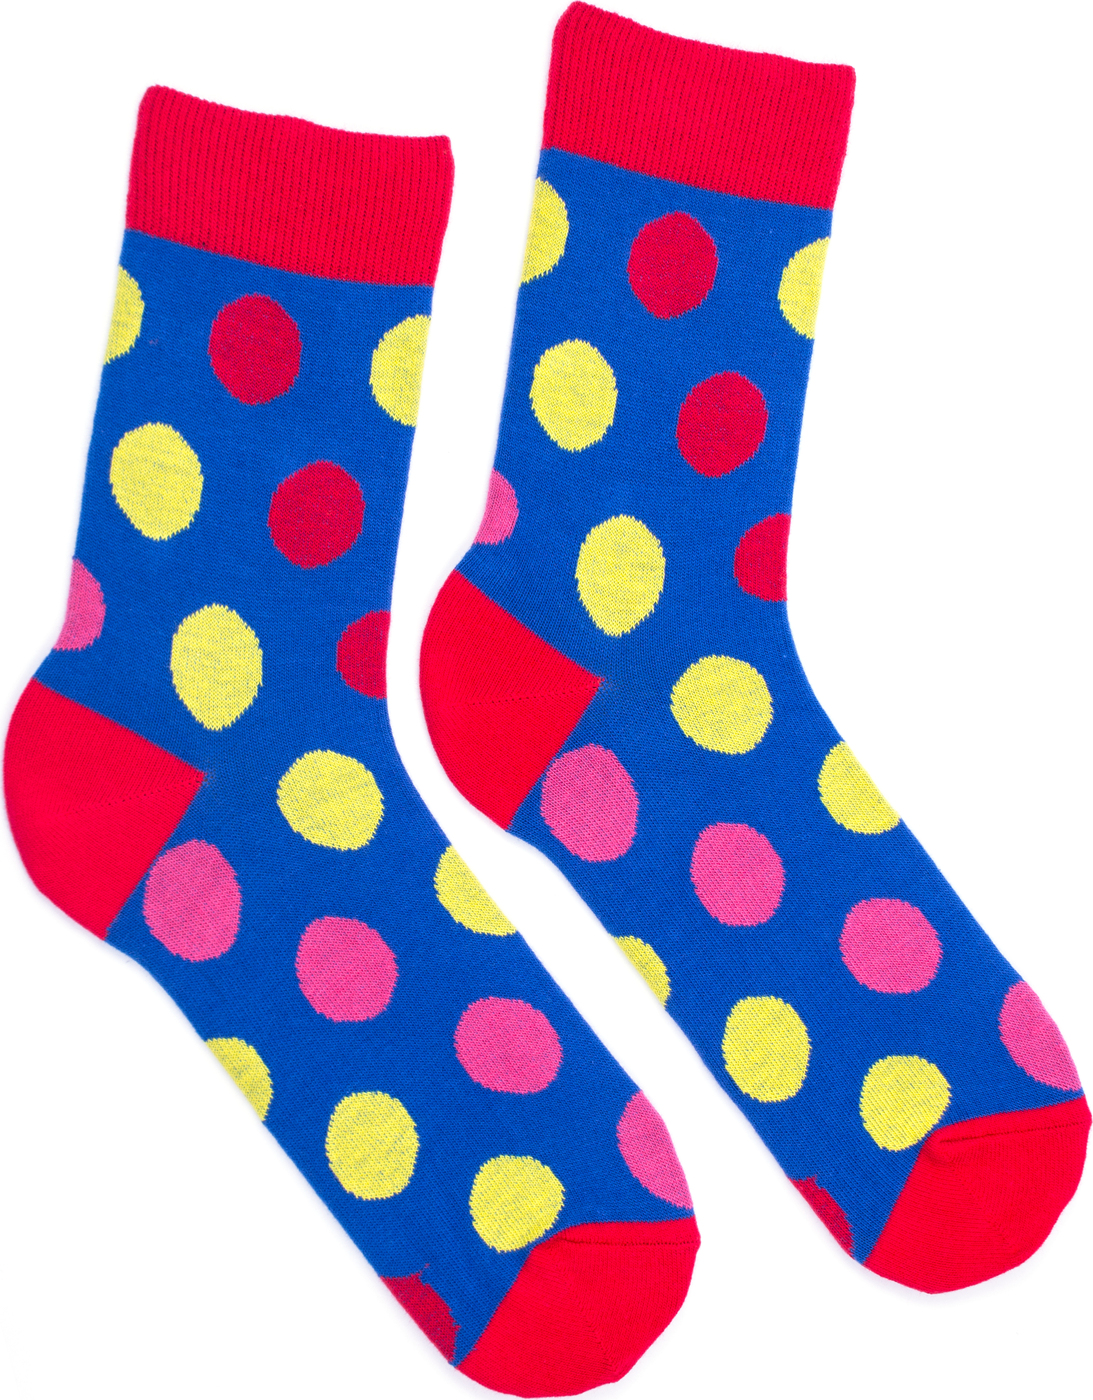 Картинка носочки. Носки для детей. Носки рисунок. Цветные носки. Носки разноцветные детские.